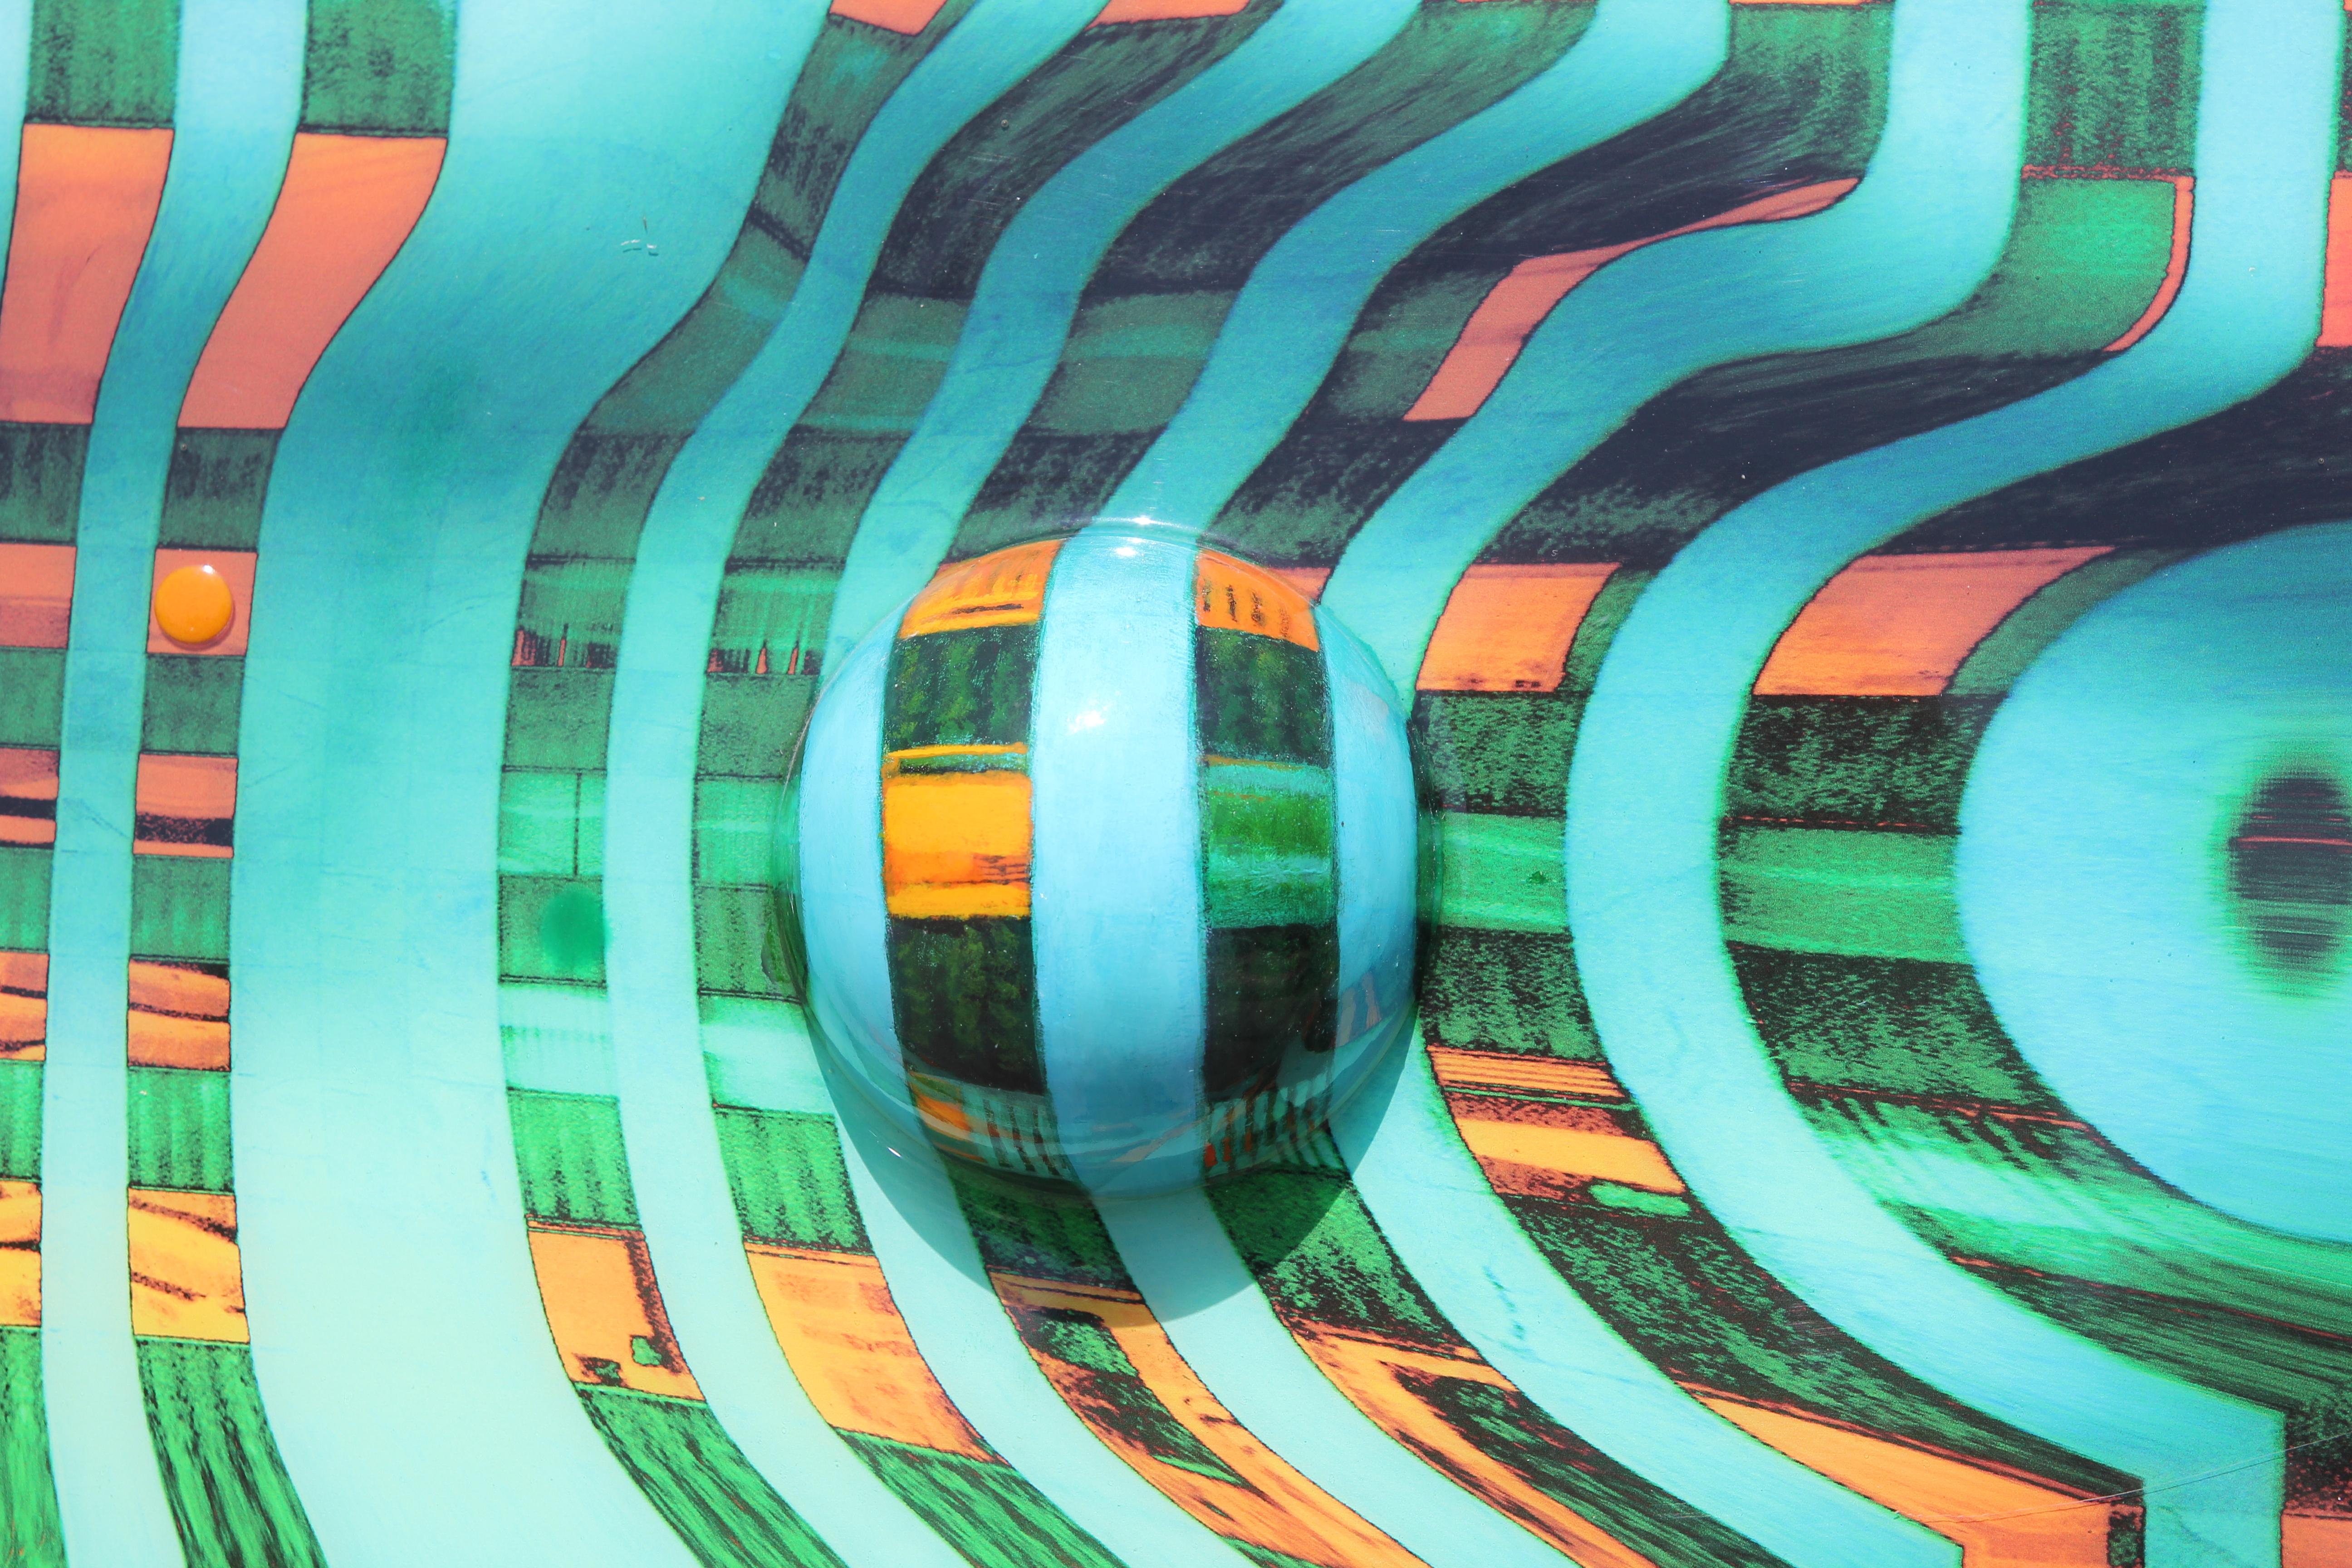 Moderne blaue, grüne und orangefarbene abstrakte Op-Art-Landschaft. Durch die Verwendung dreidimensionaler Elemente und realistischer Schattierungstechniken gelingt es Kidd, eine hügelige, futuristische Landschaft zu gestalten. Signiert, betitelt